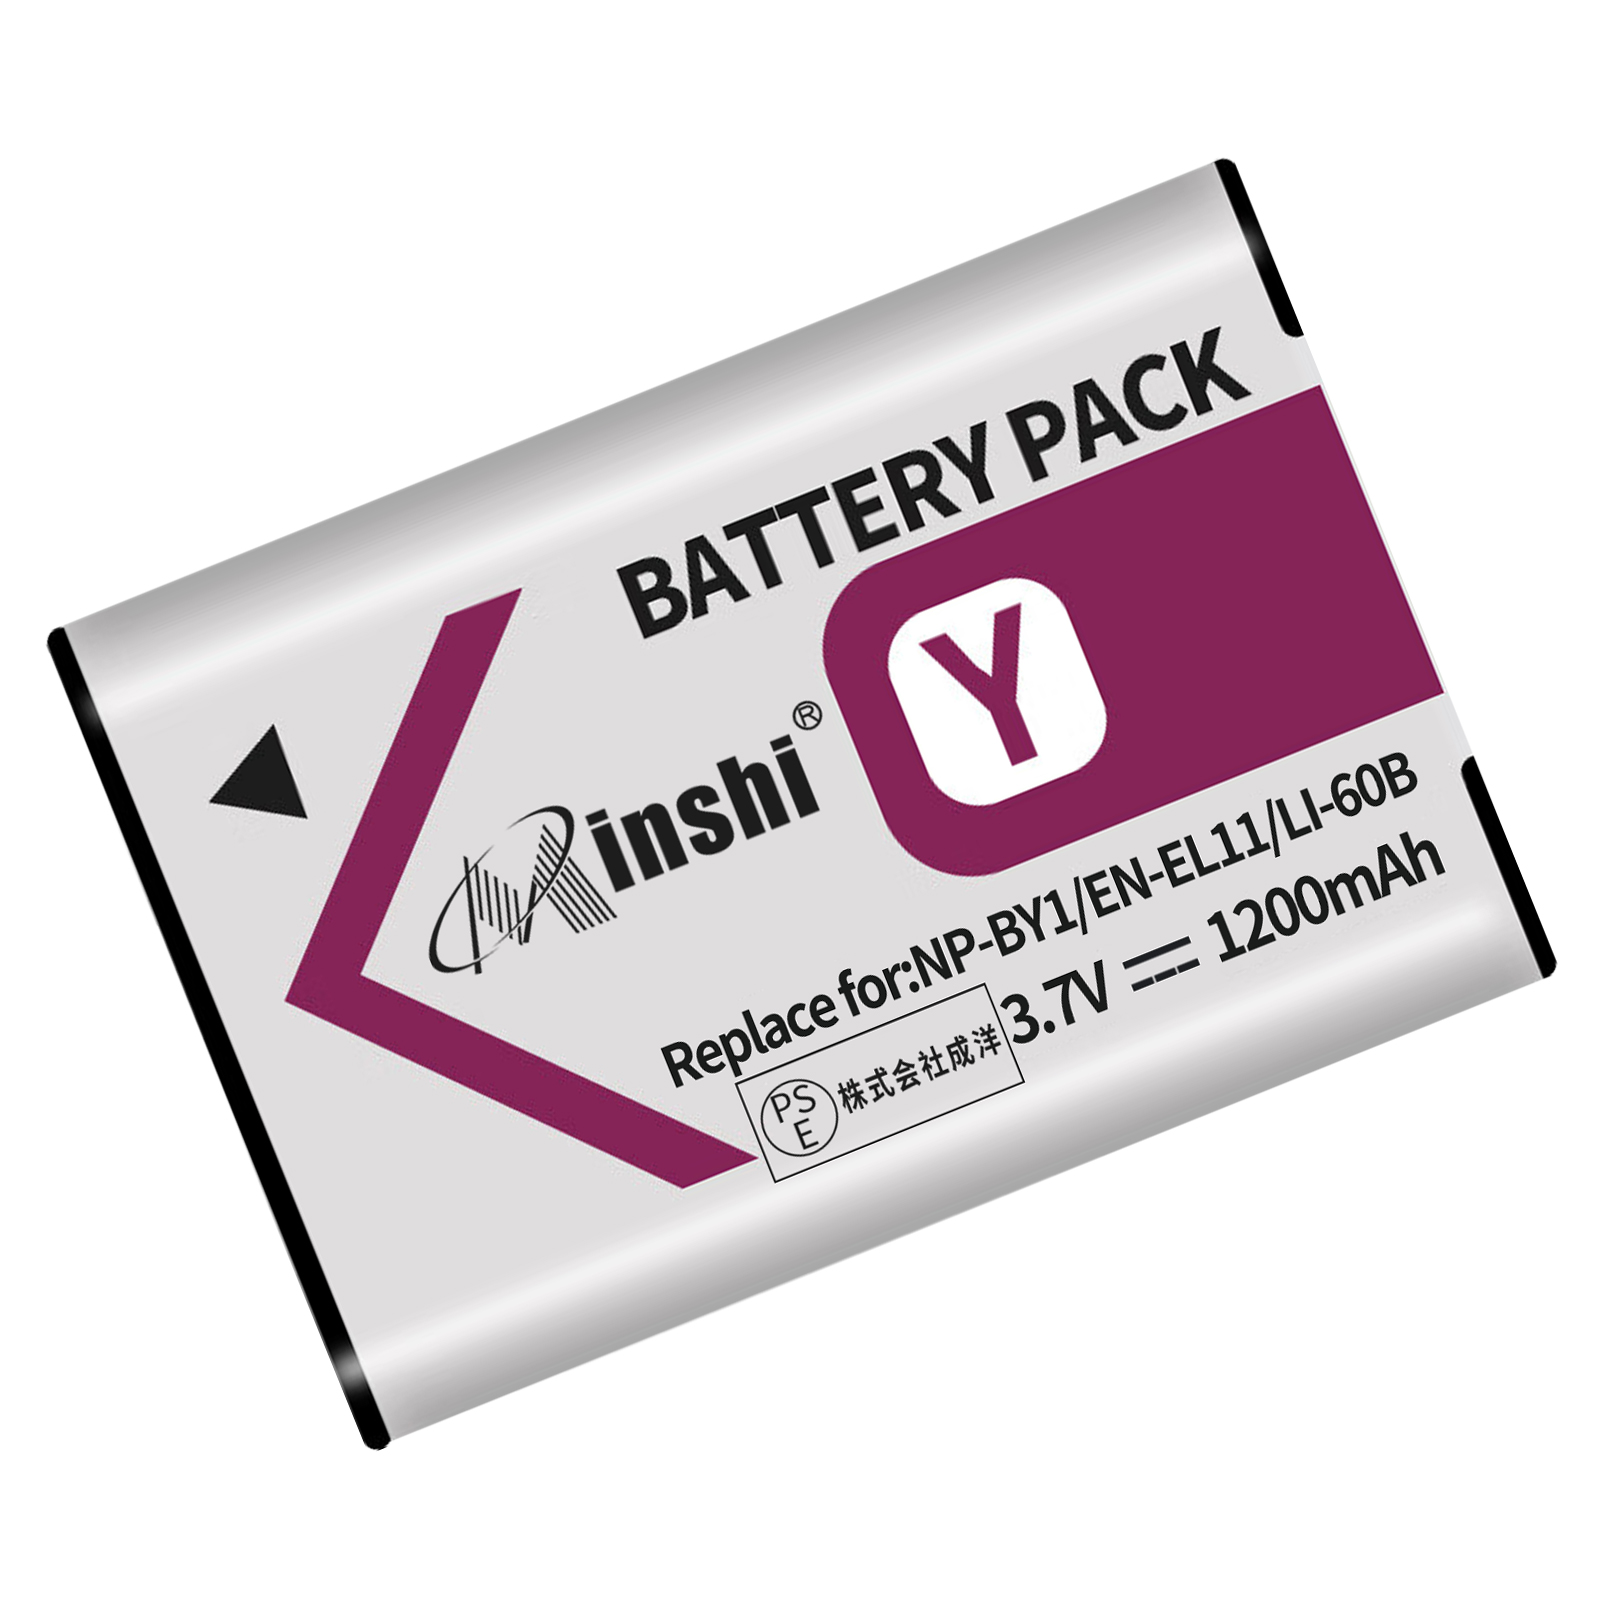 【minshi】OLYMPUS Optio M60 対応 互換バッテリー【1200mAh 3.7V】PSE認定済 高品質交換用バッテリー